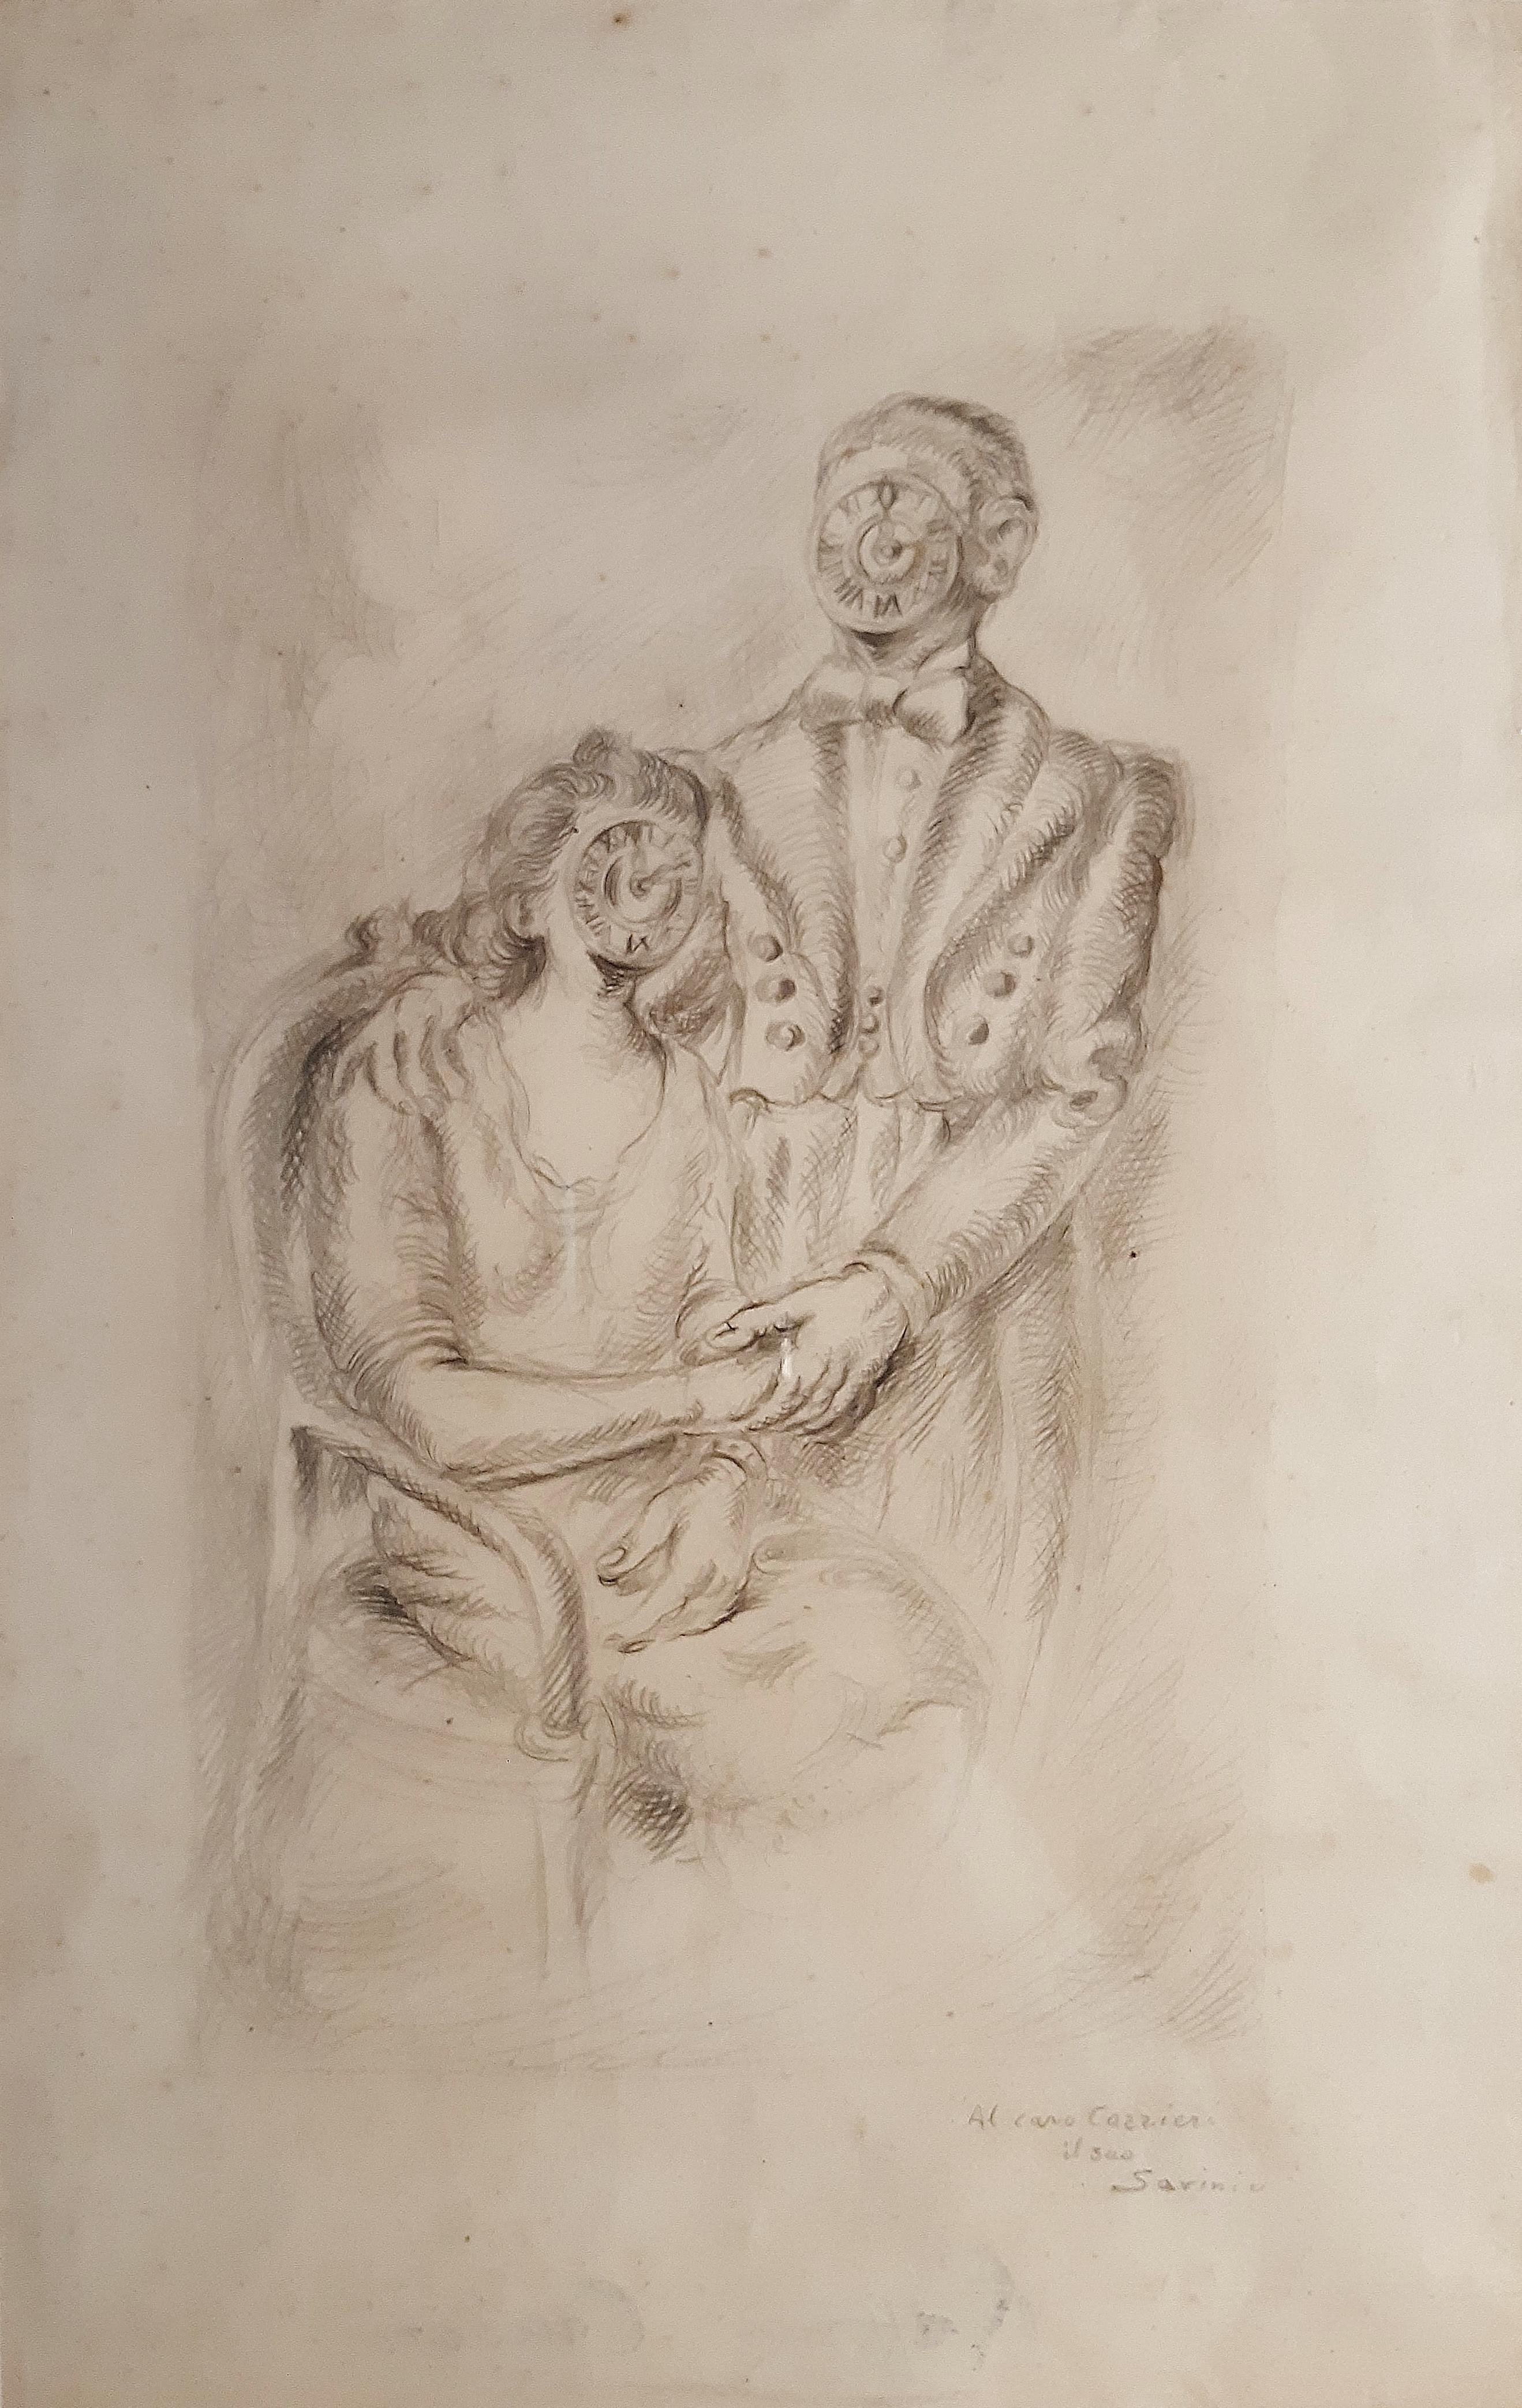 Das Eheporträt ist ein modernes Kunstwerk von Alberto Savinio aus dem Jahr 1948.

Bleistift auf Papier.

Vom Künstler handsigniert und Raffaele Carrieri gewidmet.

Echtheitszertifikat von Ruggero Savinio auf dem Foto.